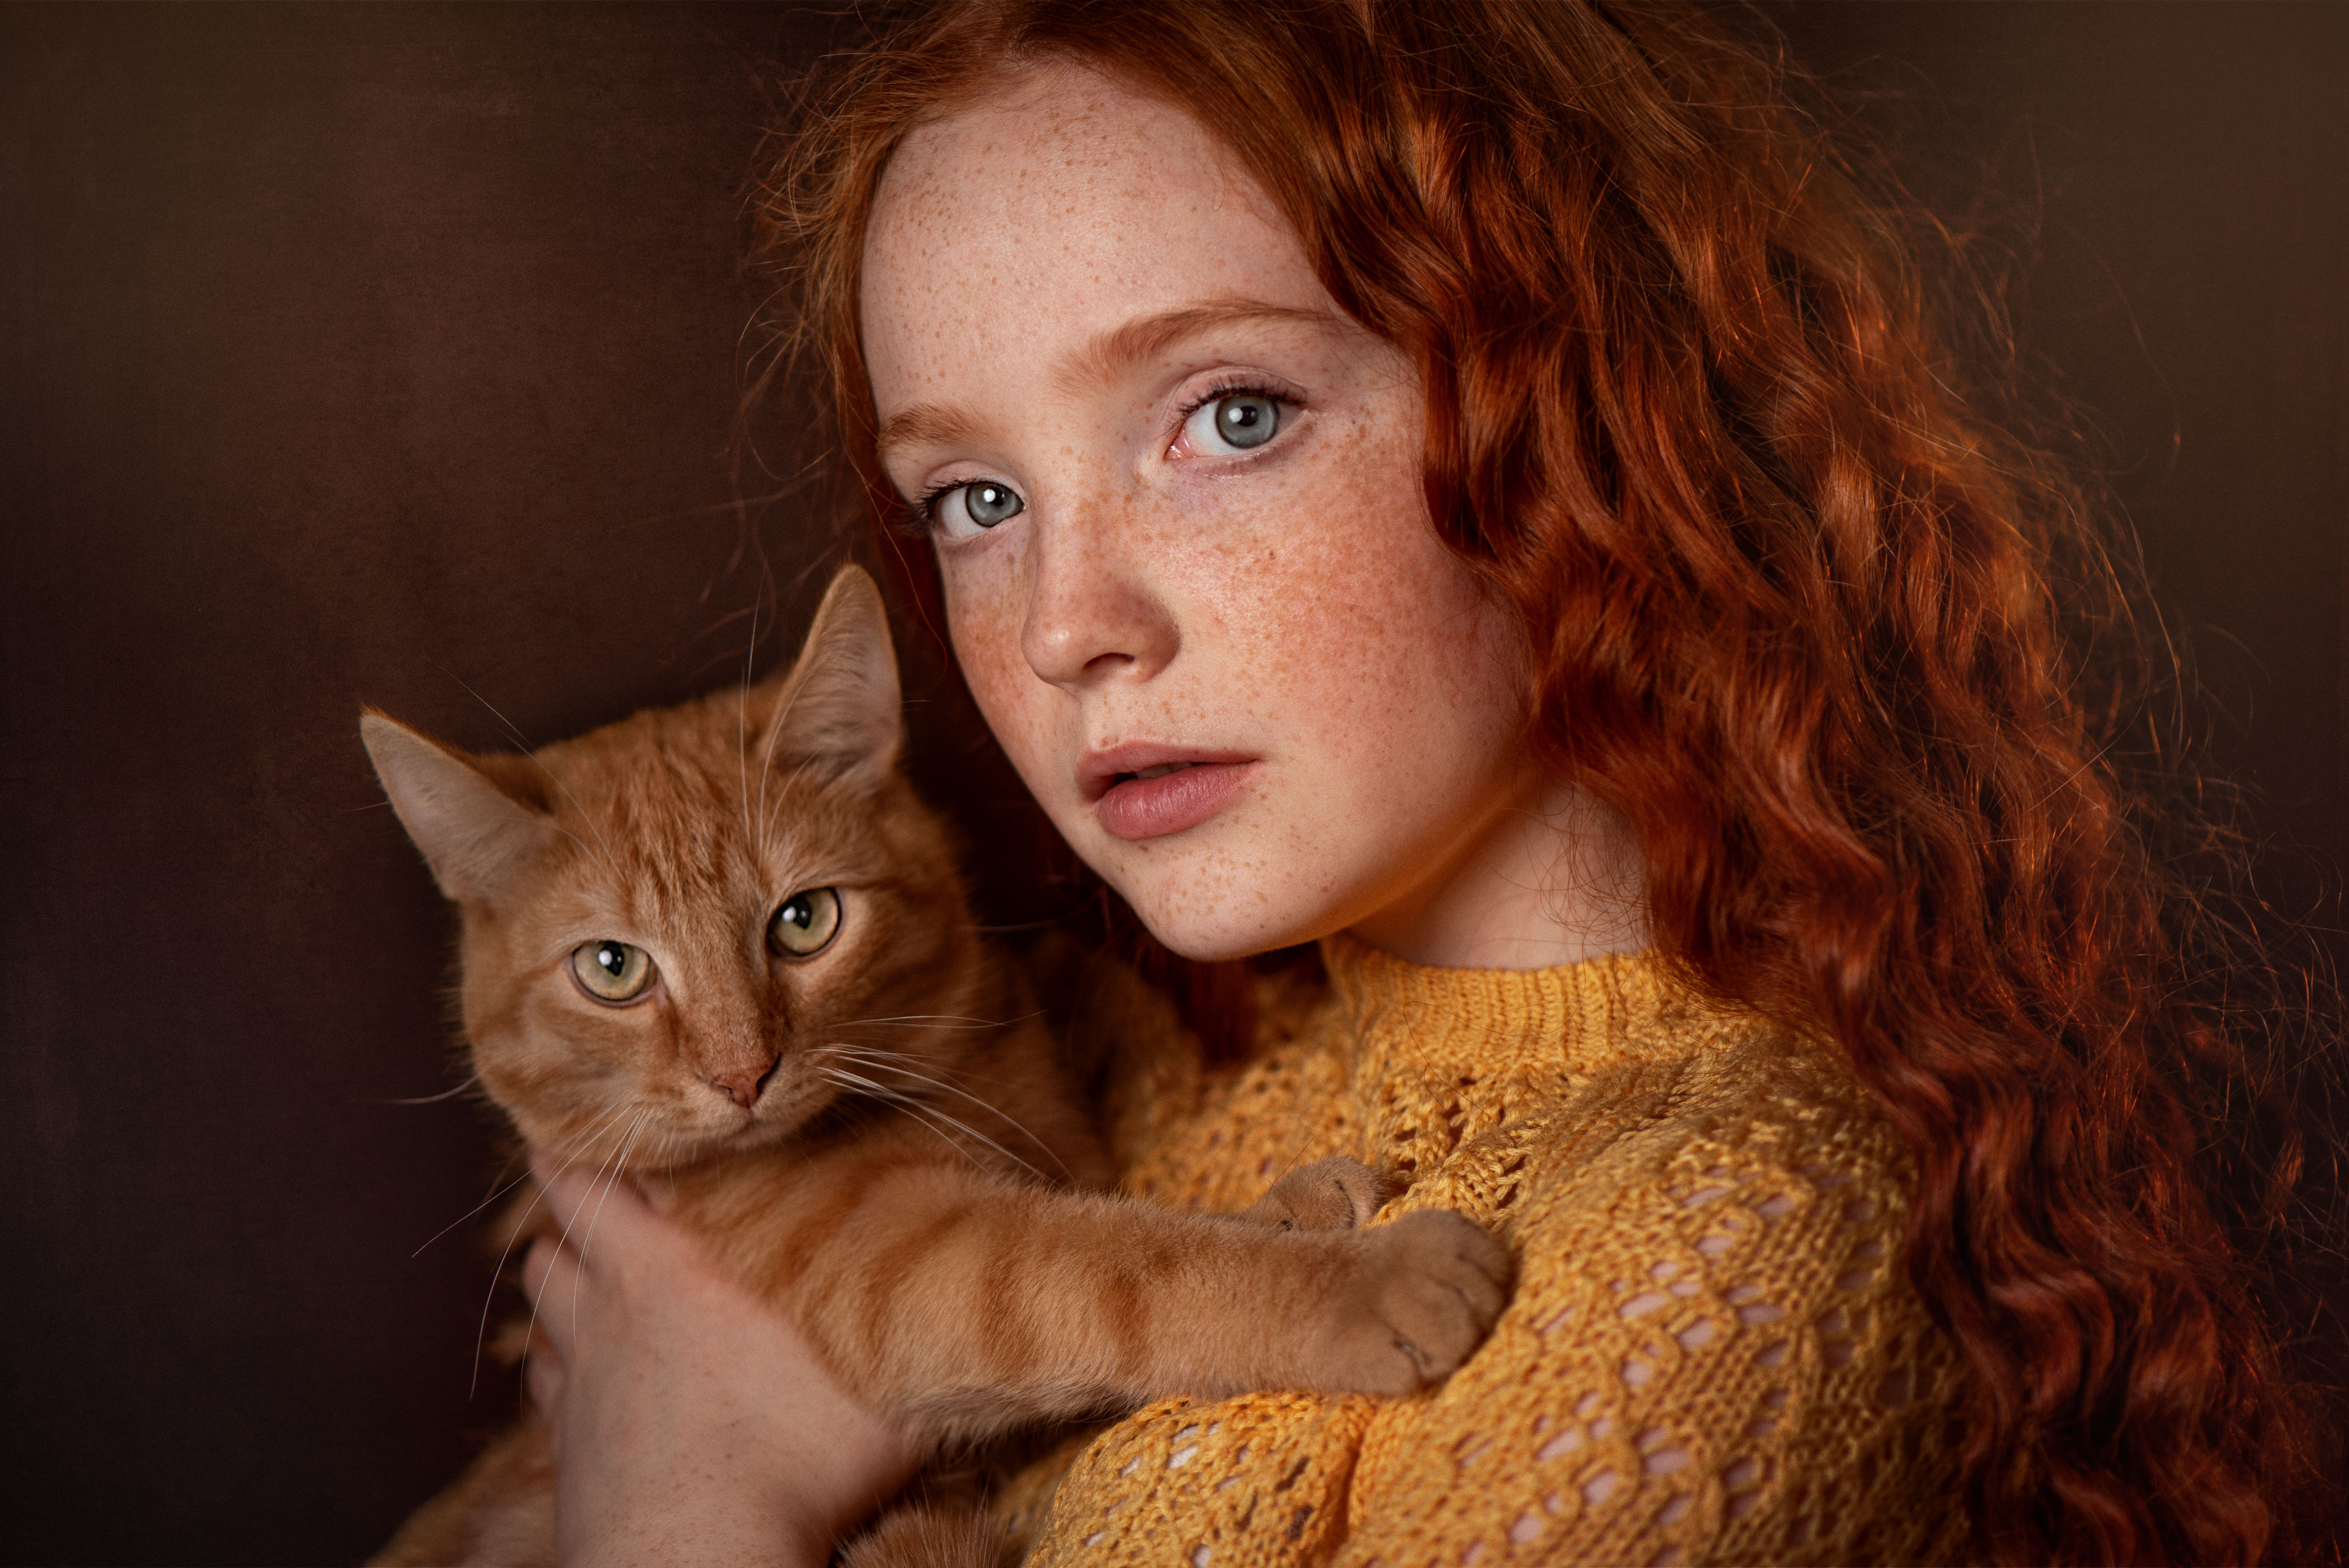 Девочка с рыжим котом